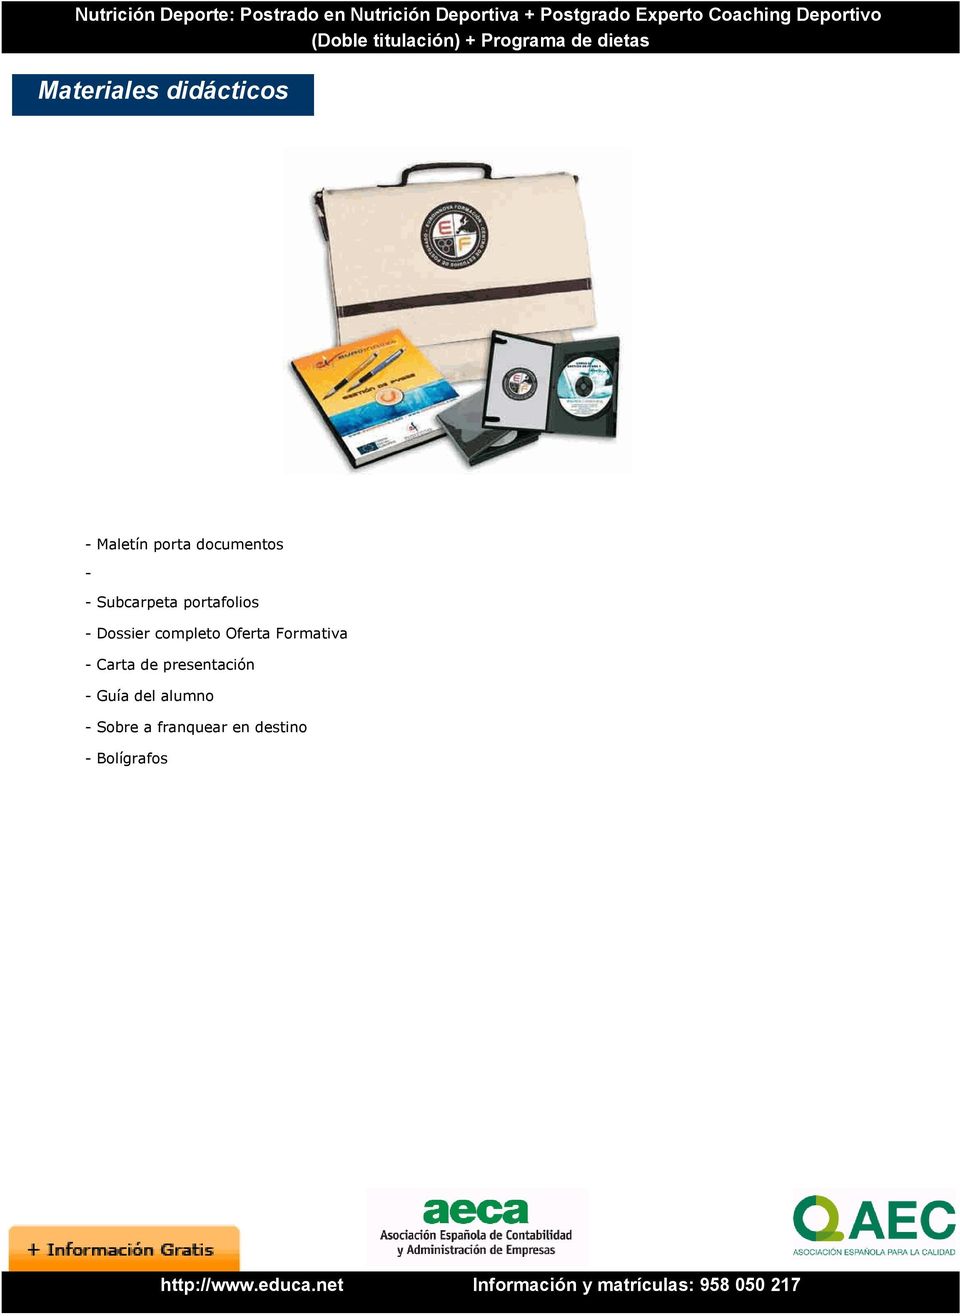 Oferta Formativa - Carta de presentación - Guía